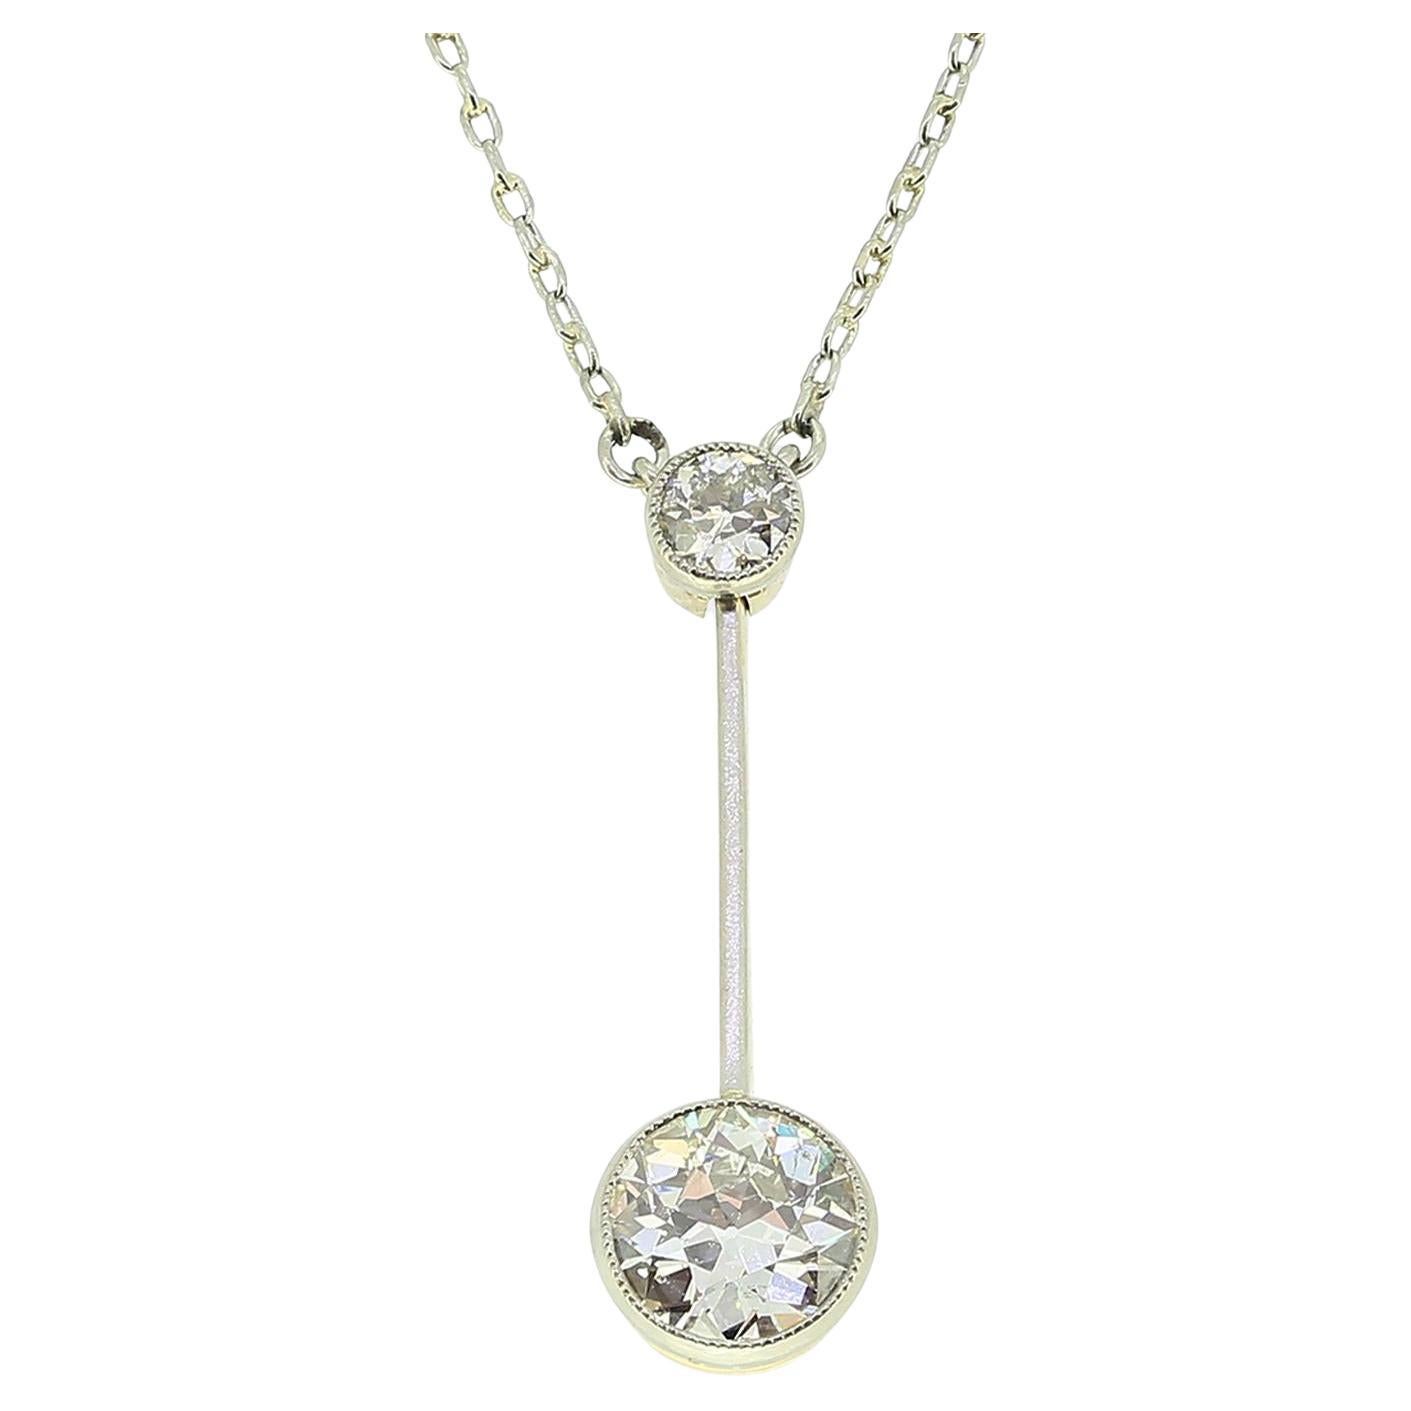 Edwardian Diamond Drop Pendant Necklace